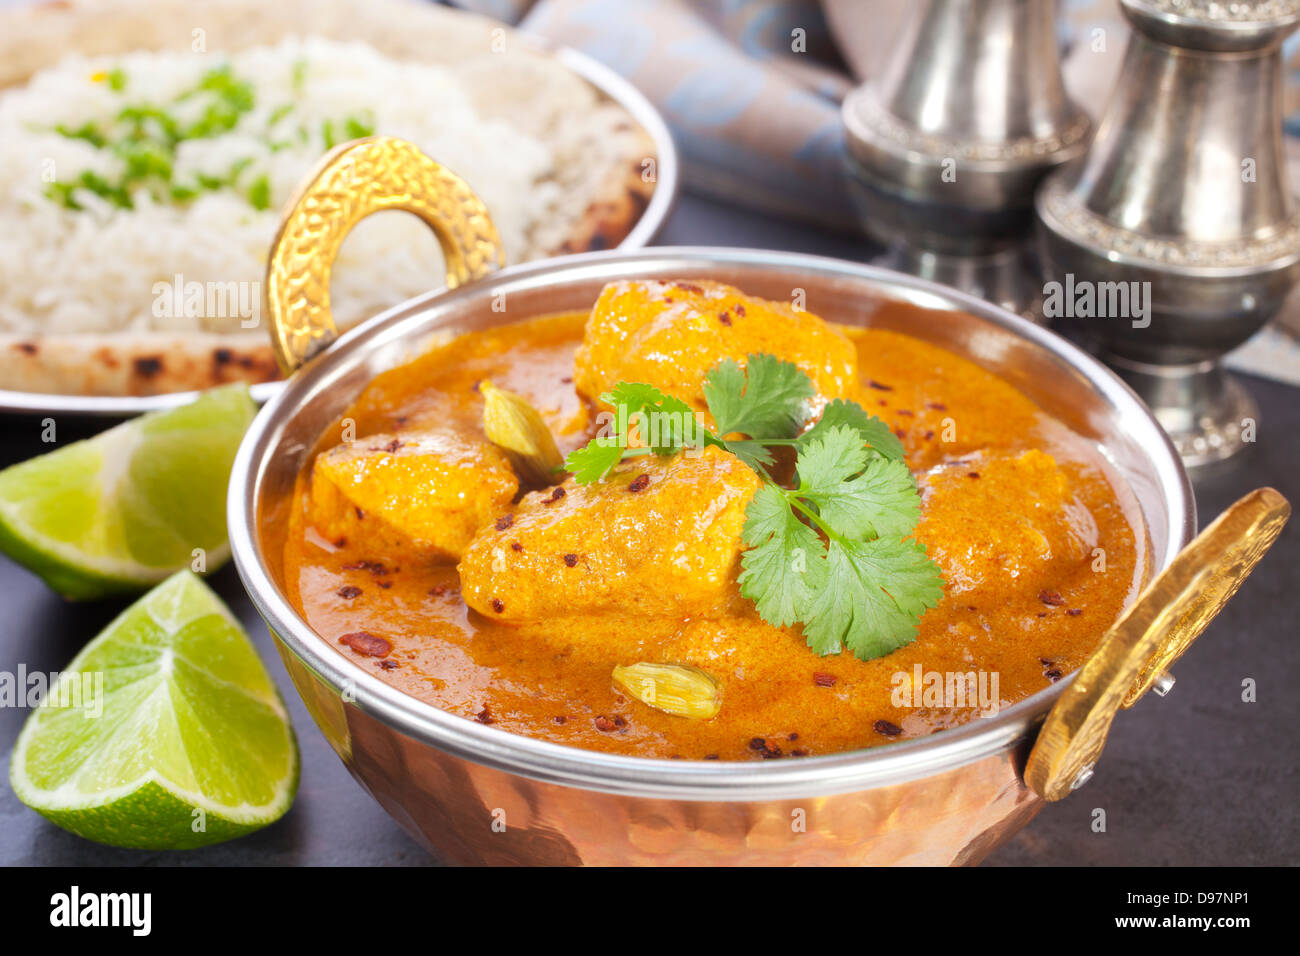 Butter Chickencurry - Favorit indisches Essen, butter Huhn mit Basmati-Reis, Naan-Brot und Kalk. Stockfoto